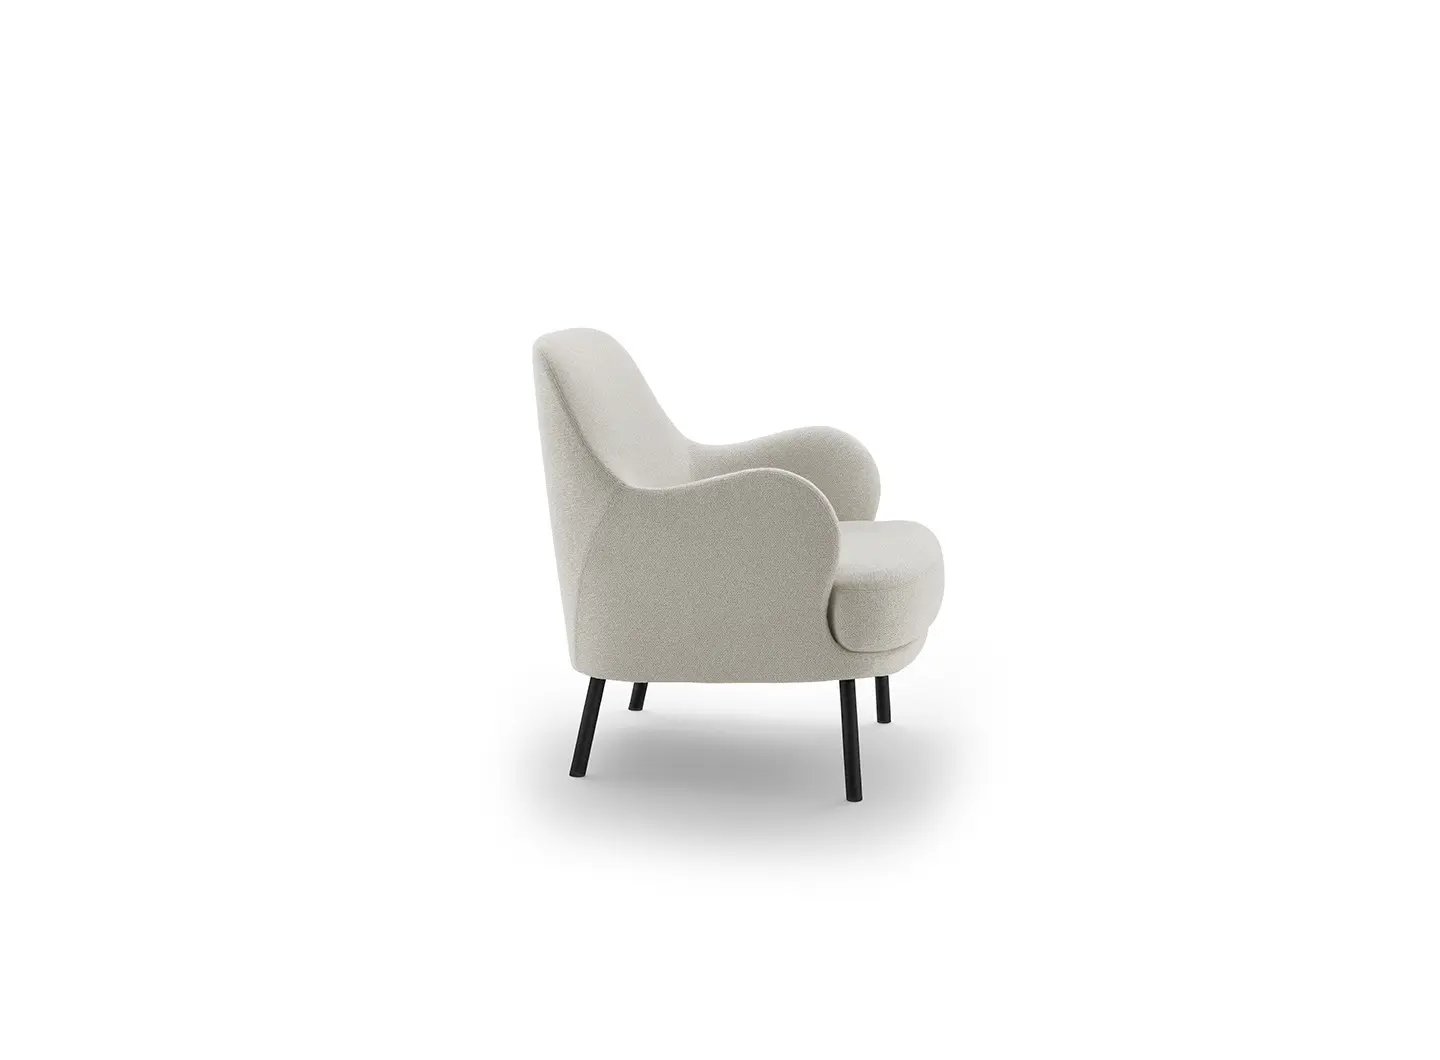 Brigitte armchair design Claesson Koivisto Rune